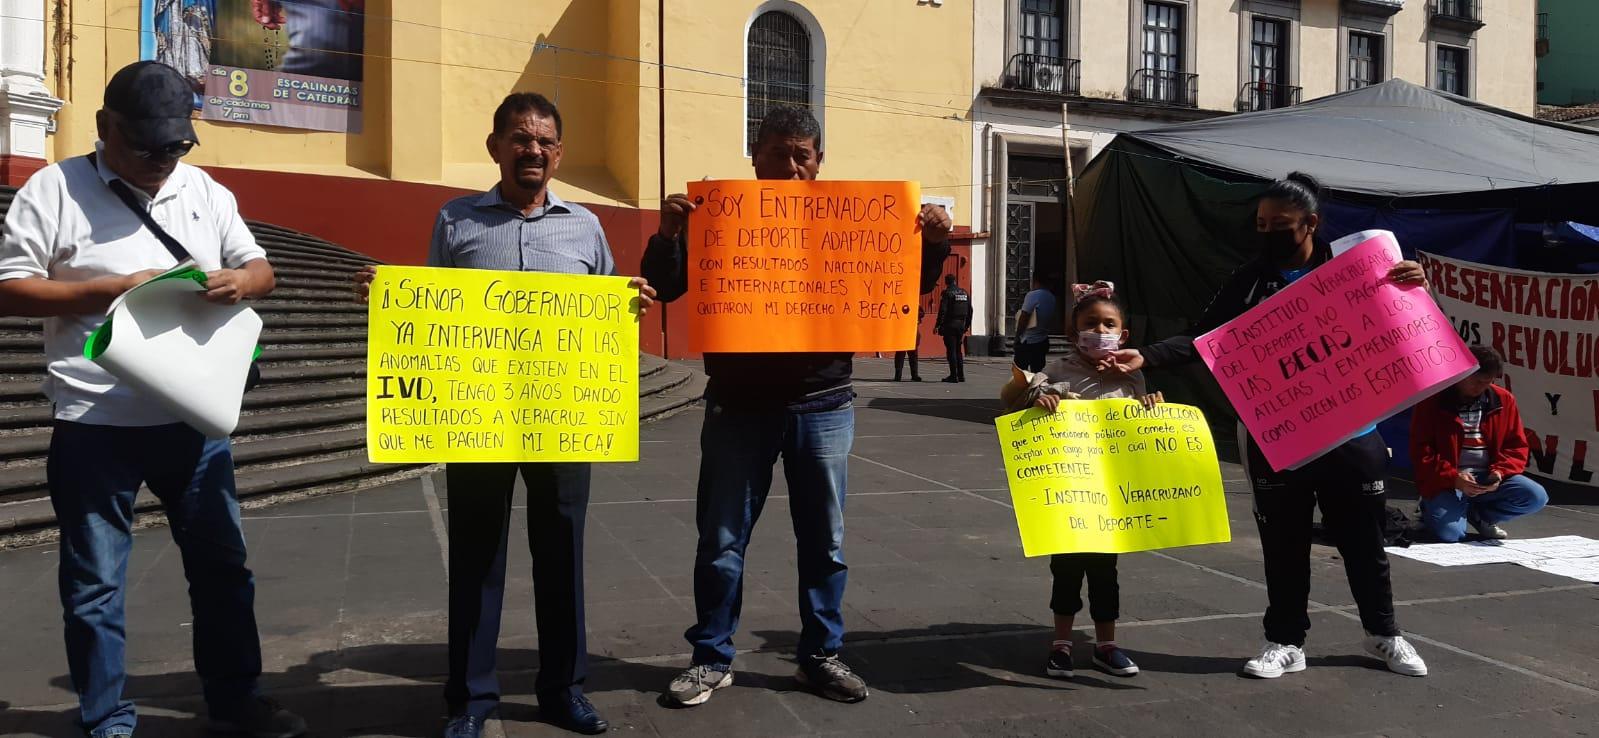 Que paguen lo justo: entrenadores reclaman becas al IVD en Xalapa